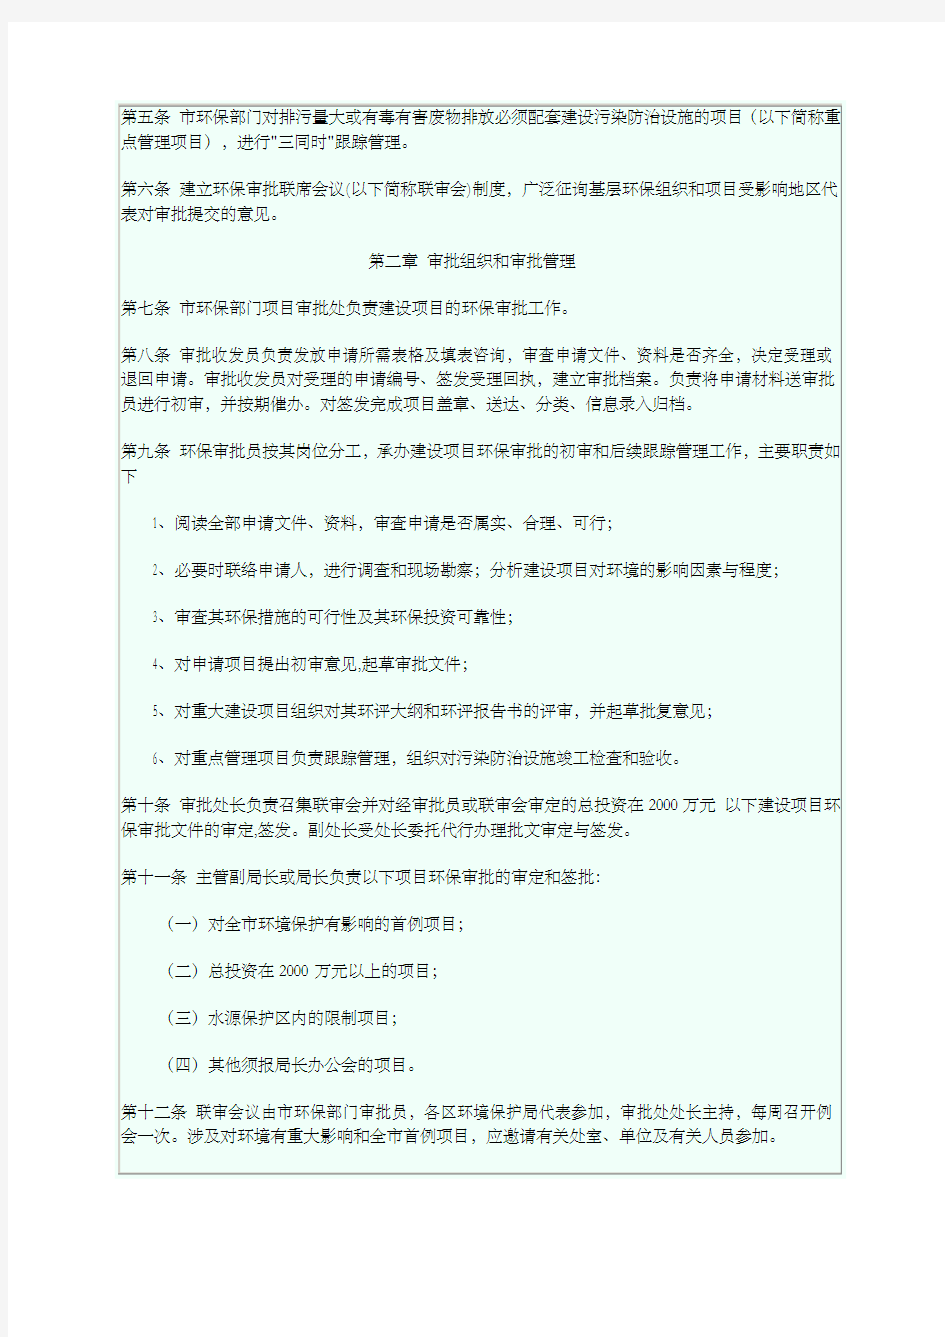 深圳市环境保护局建设项目环境影响审批管理办法